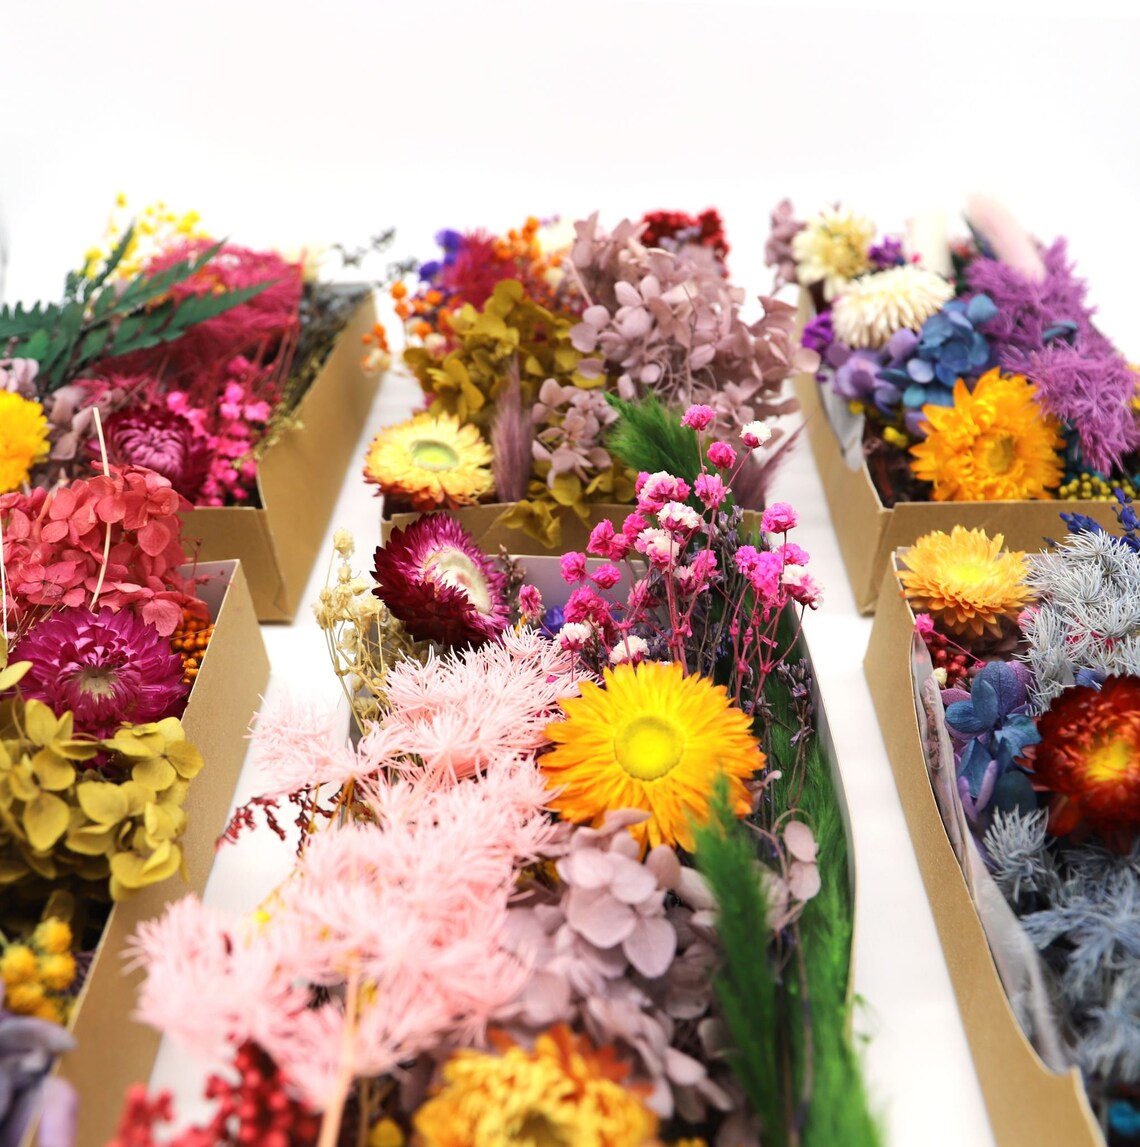 Box mit getrockneten Blumen - Zufälliger Mix